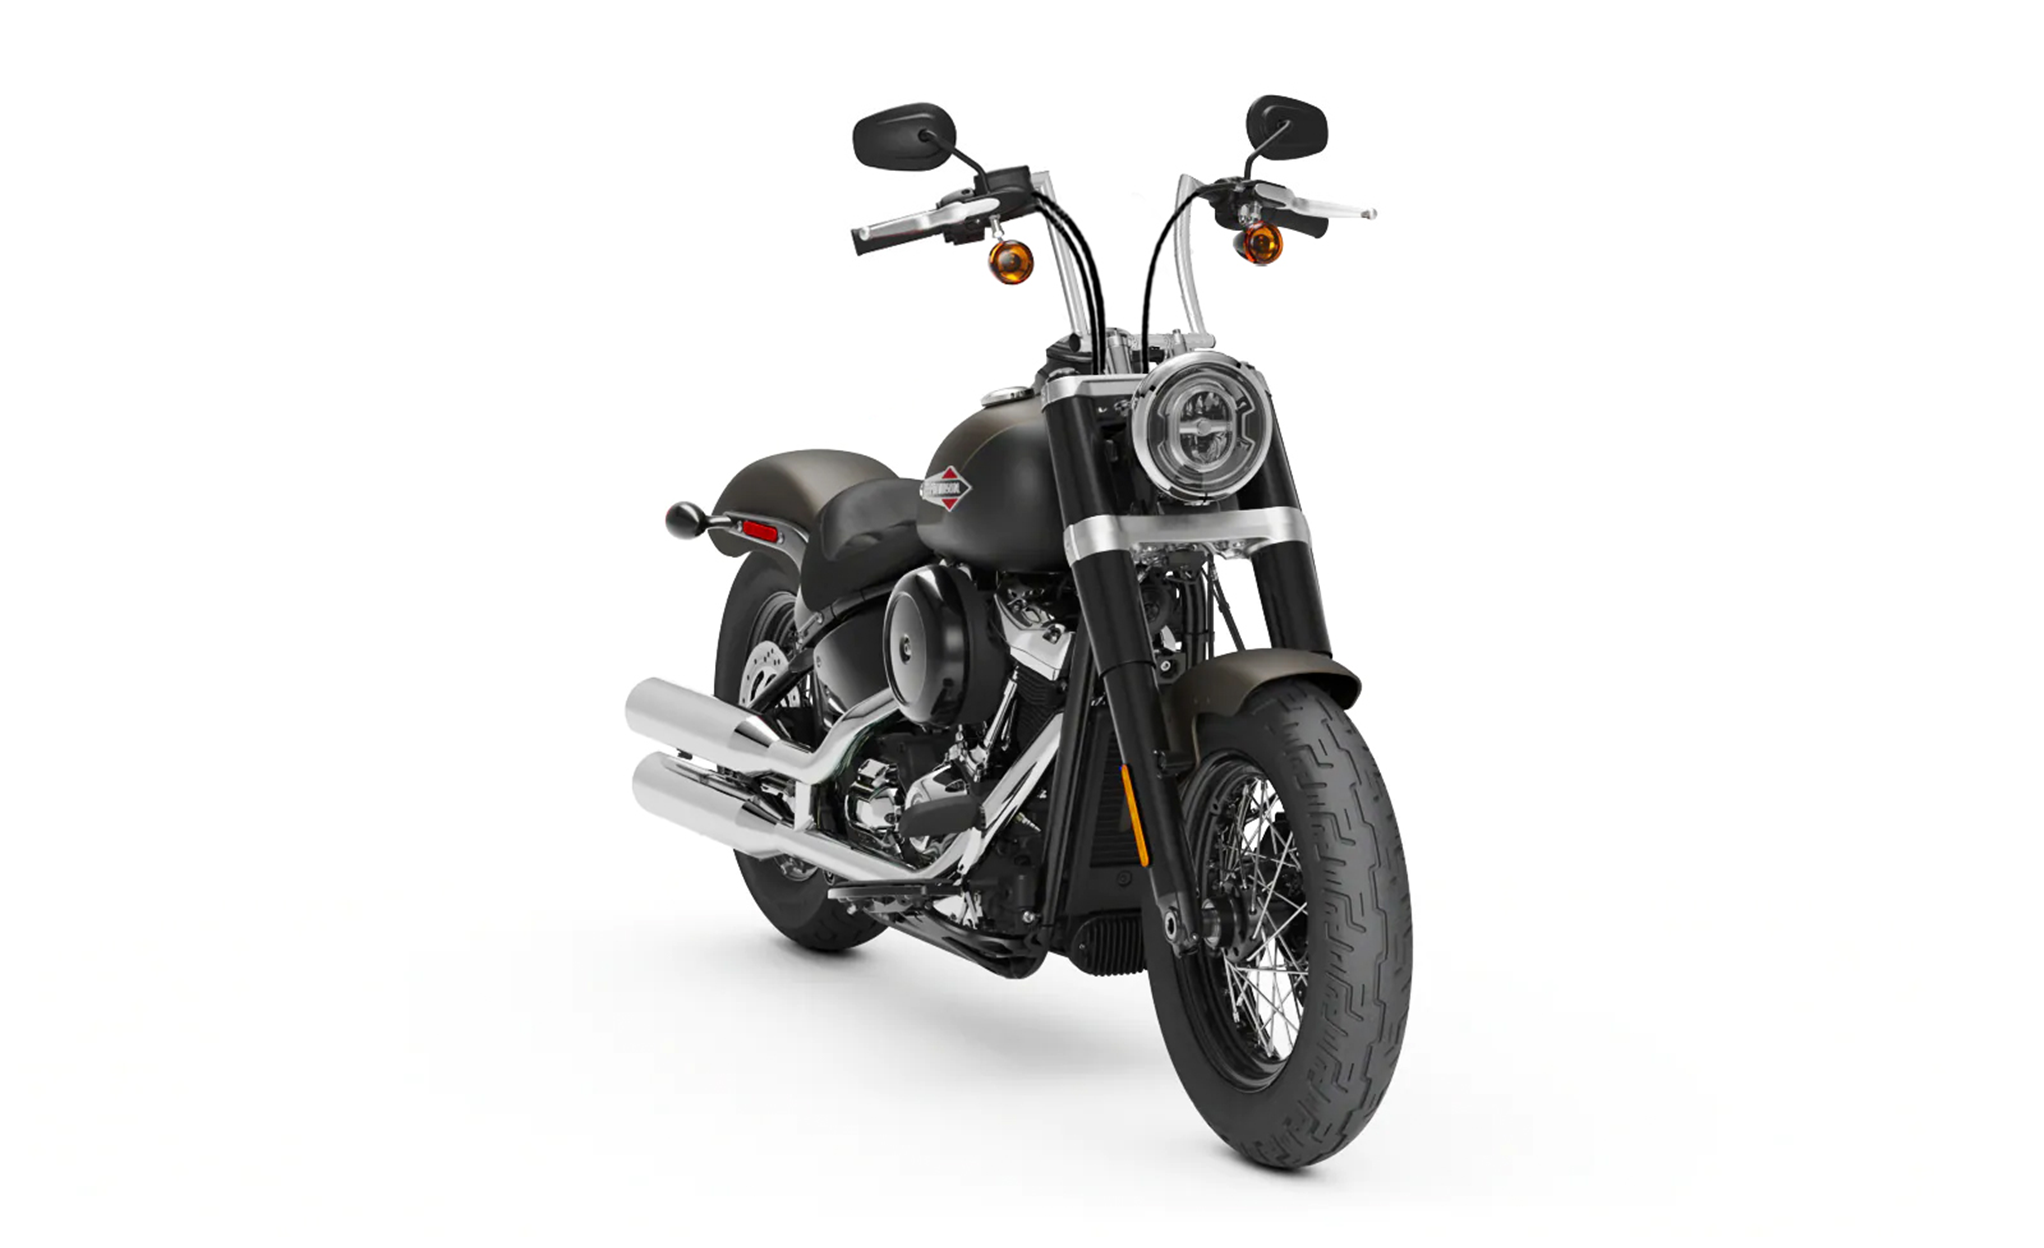 Viking Iron Born 9" Handlebar for Harley Softail Slim FLS Chrome Bag on Bike View @expand